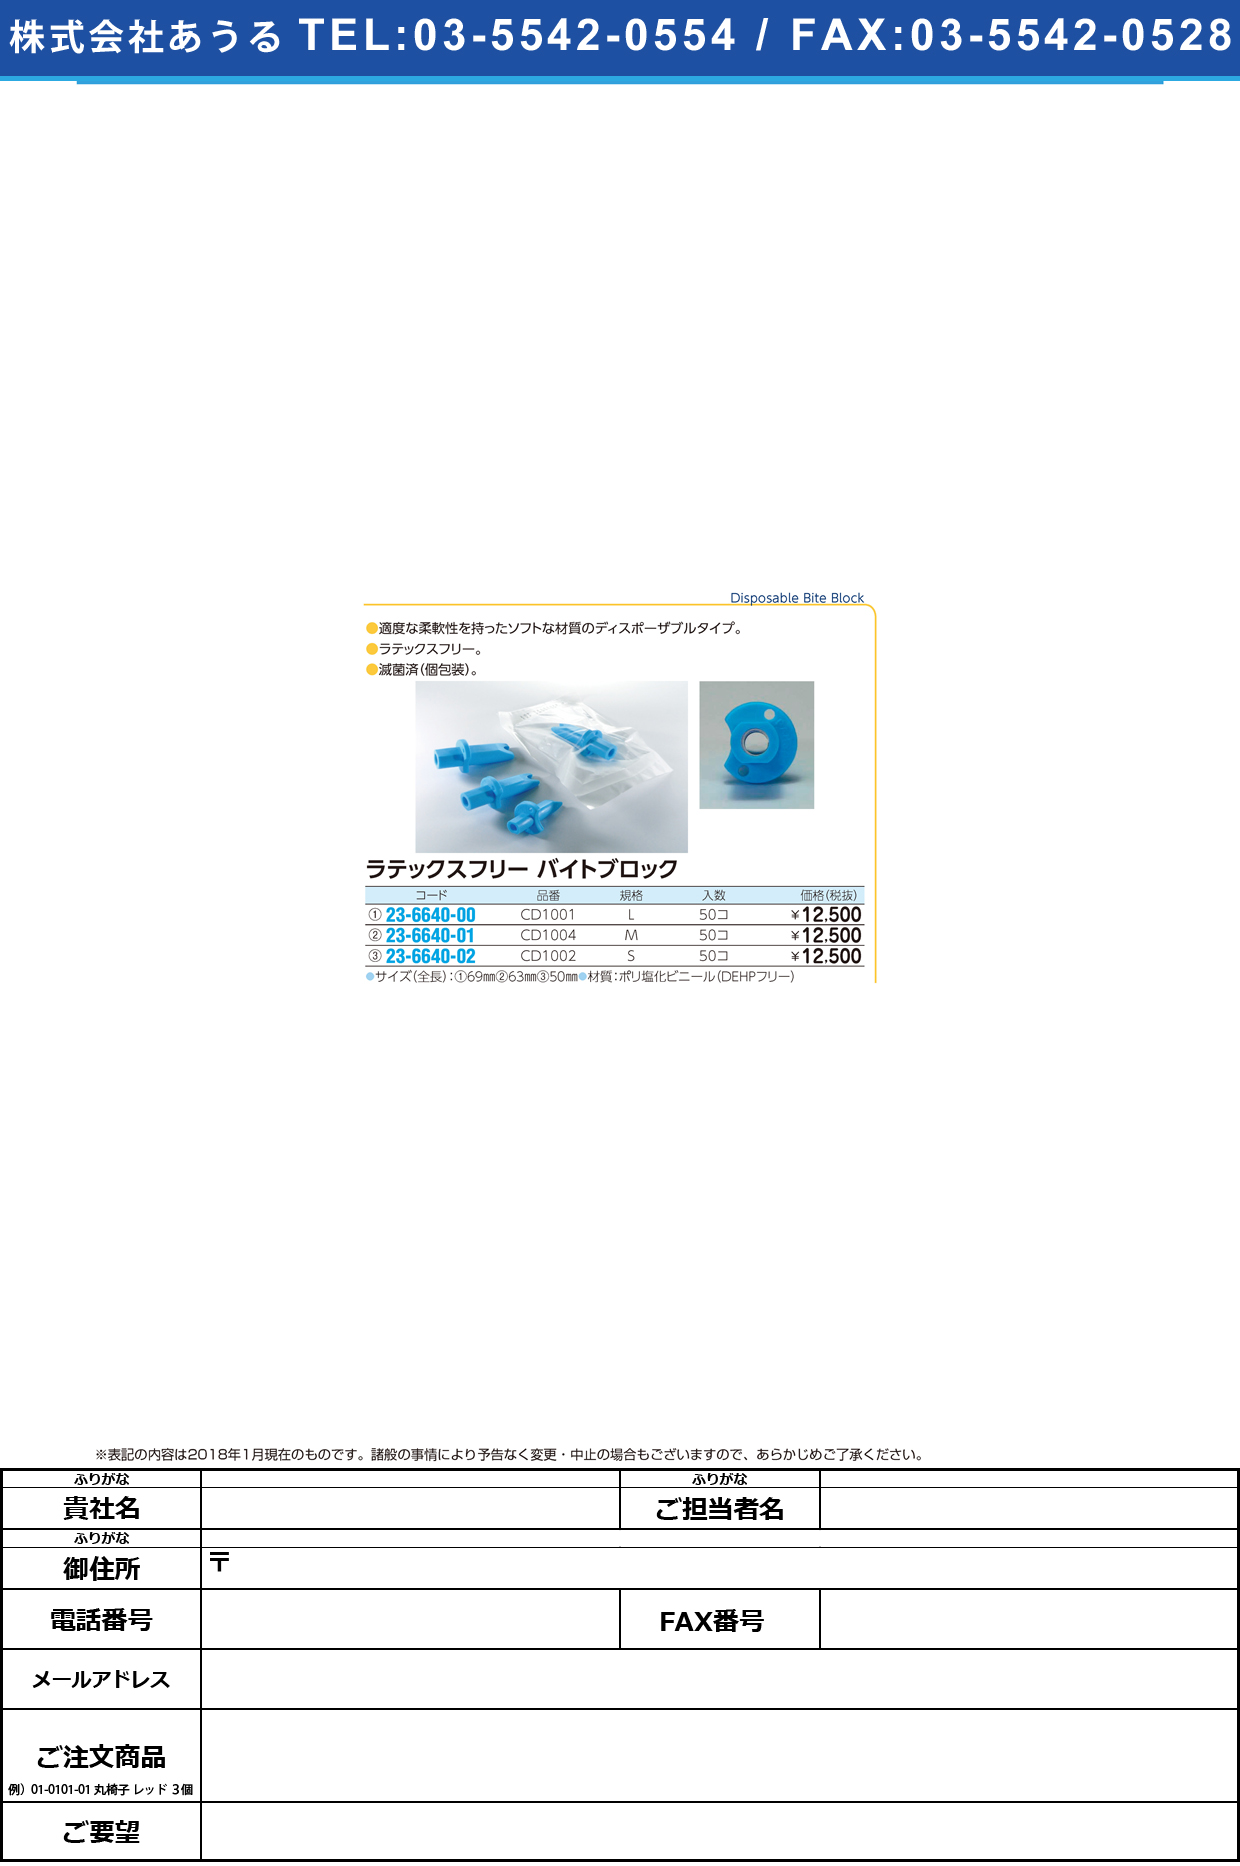 (23-6640-00)ラテックスフリーバイトブロック CD1001(L)50ｺｲﾘ ﾗﾃｯｸｽﾌﾘｰﾊﾞｲﾄﾌﾞﾛｯｸ【1袋単位】【2018年カタログ商品】